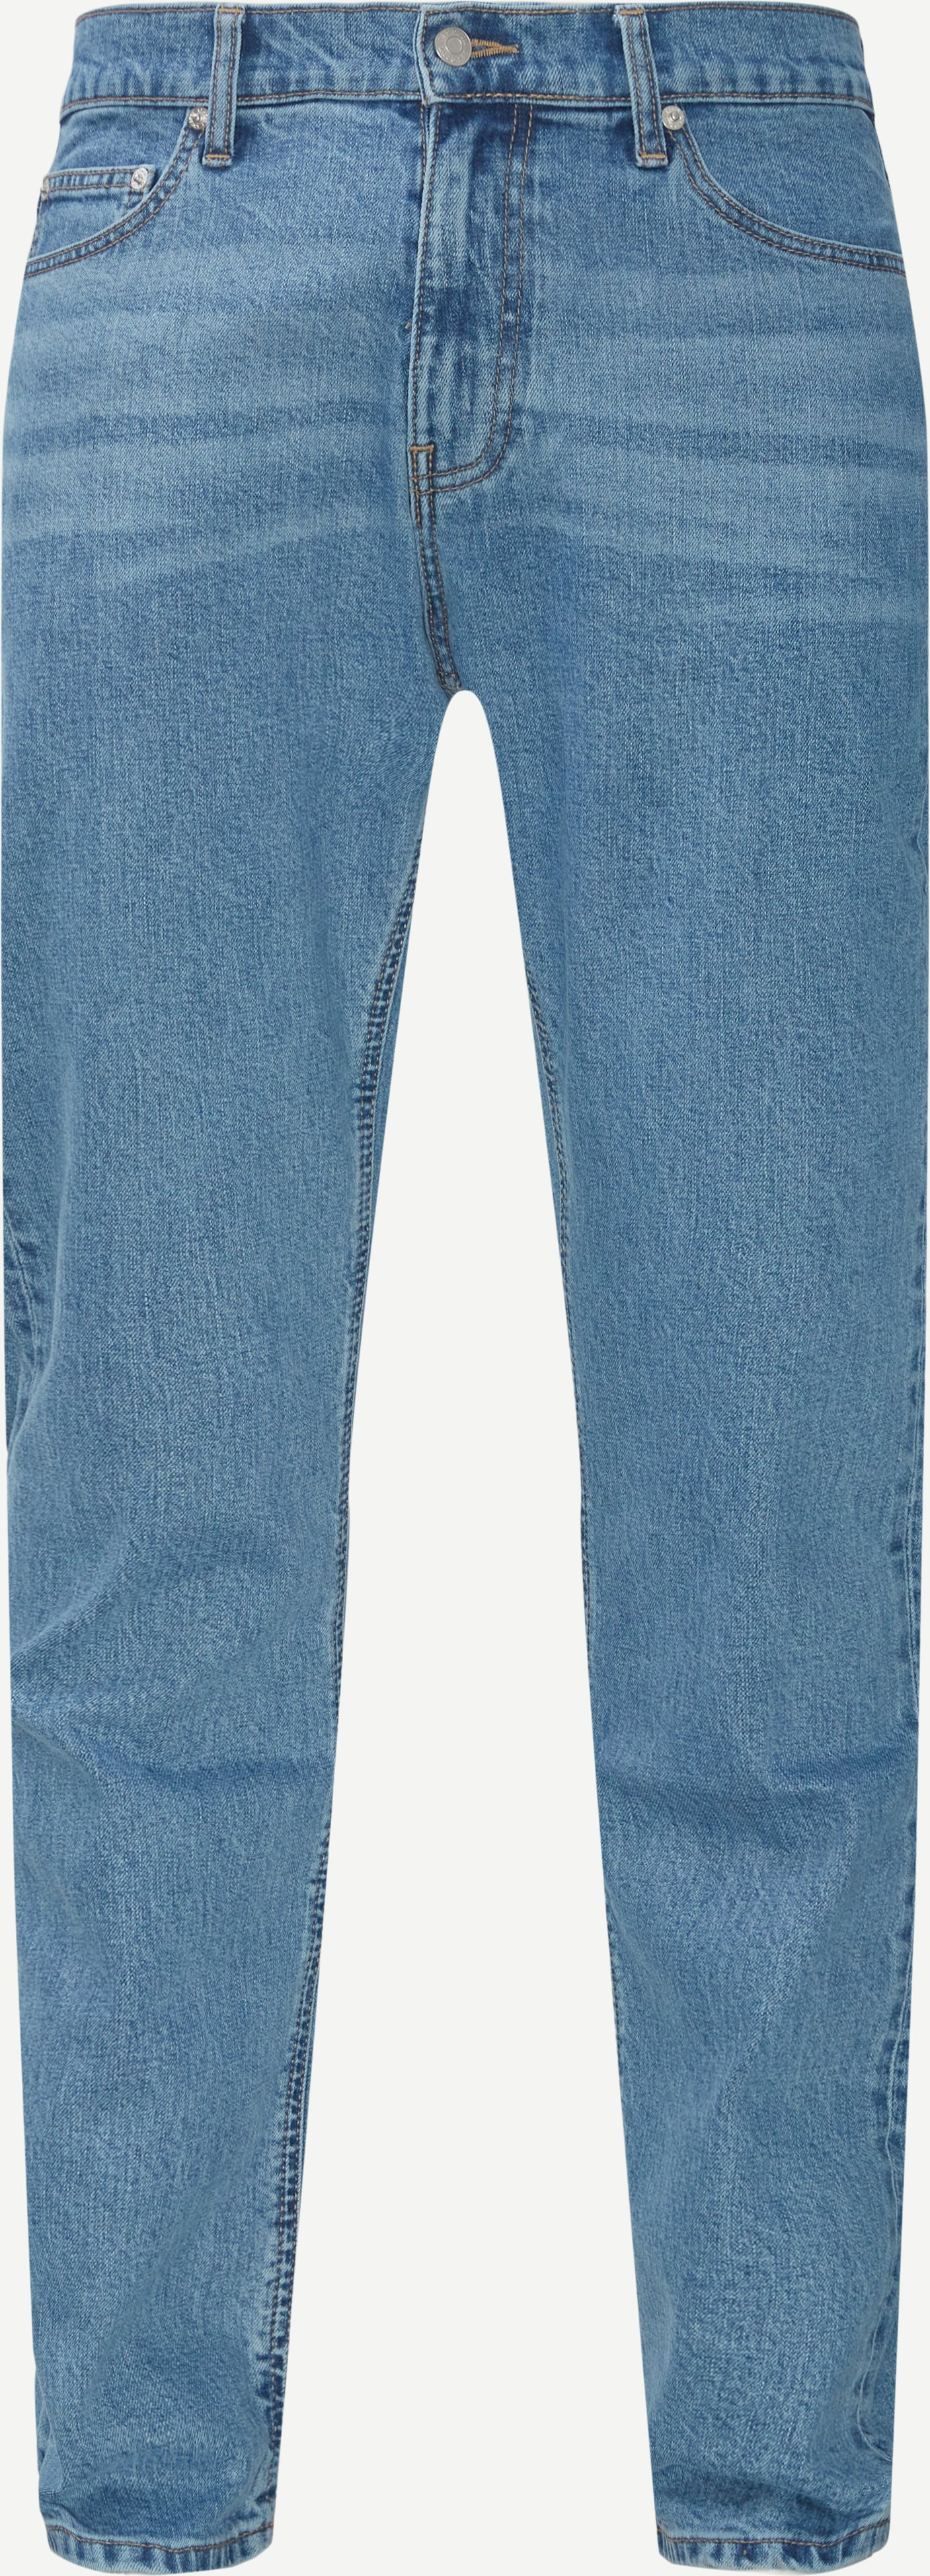 Les Deux Jeans RUSSELL REGULAR FIT JEANS LDM550003 Denim